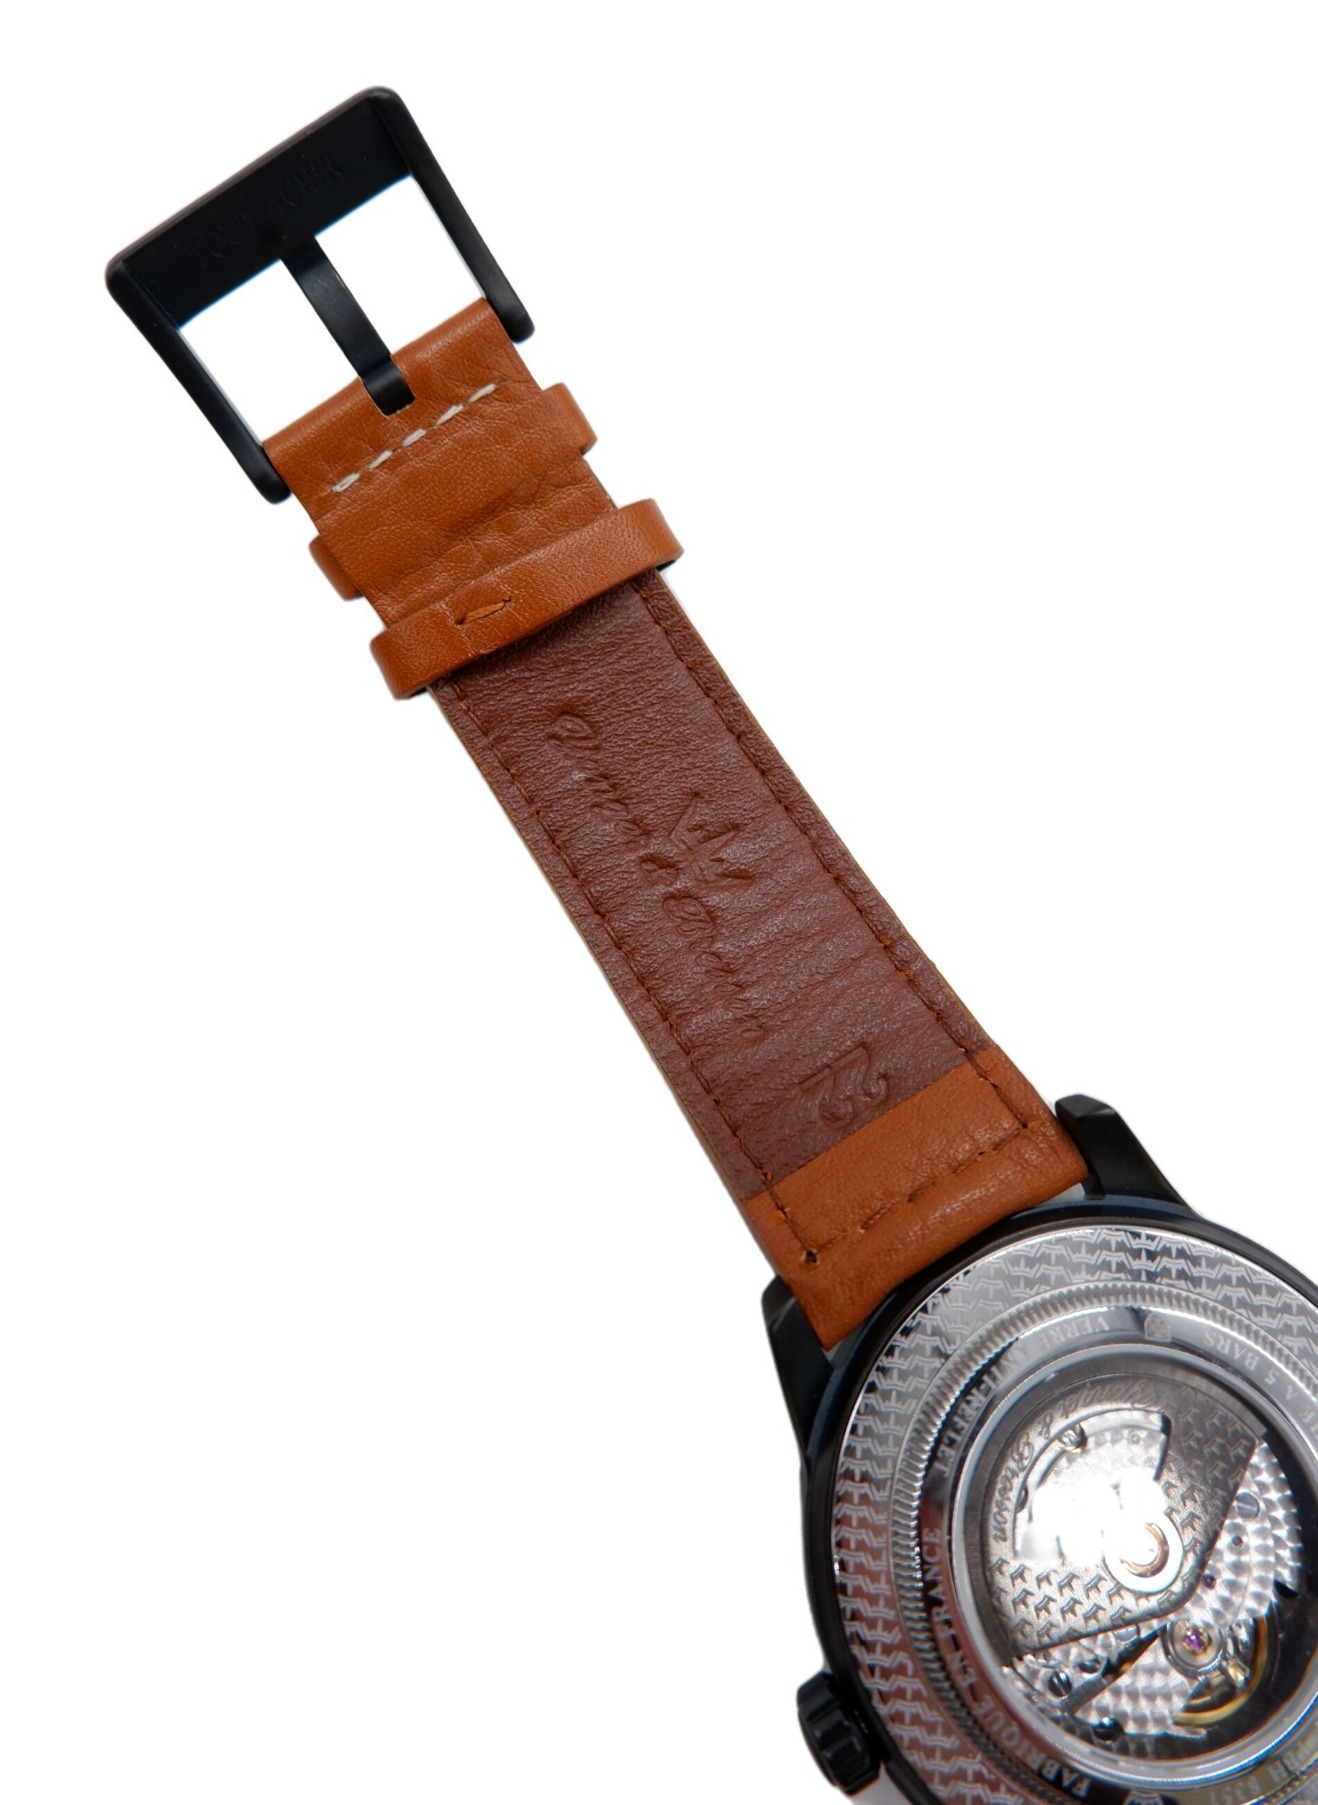 Yonger&Bresson (ヨンガー&ブレッソン) 腕時計